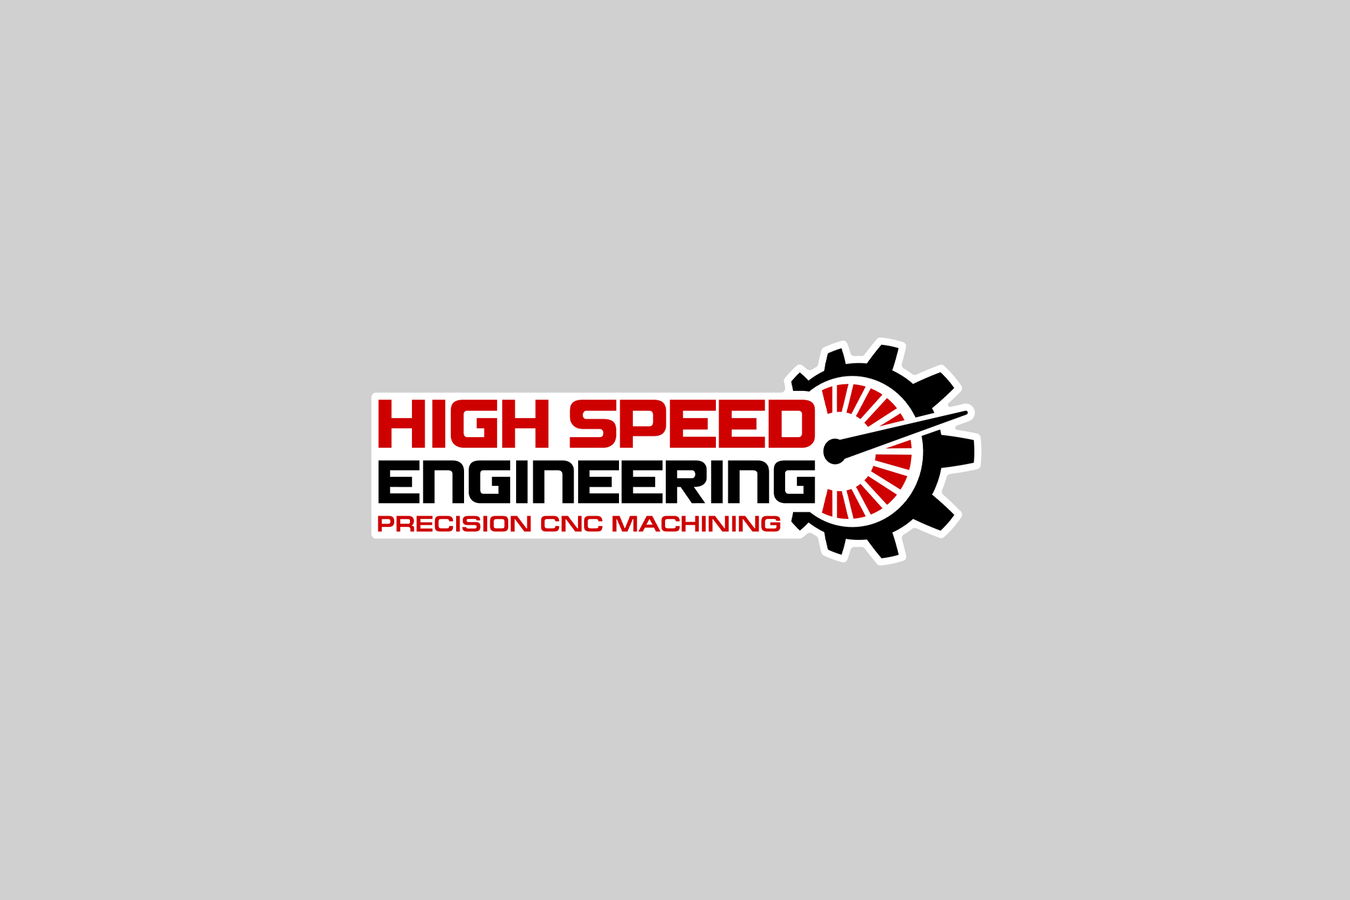 High Speed Engineering